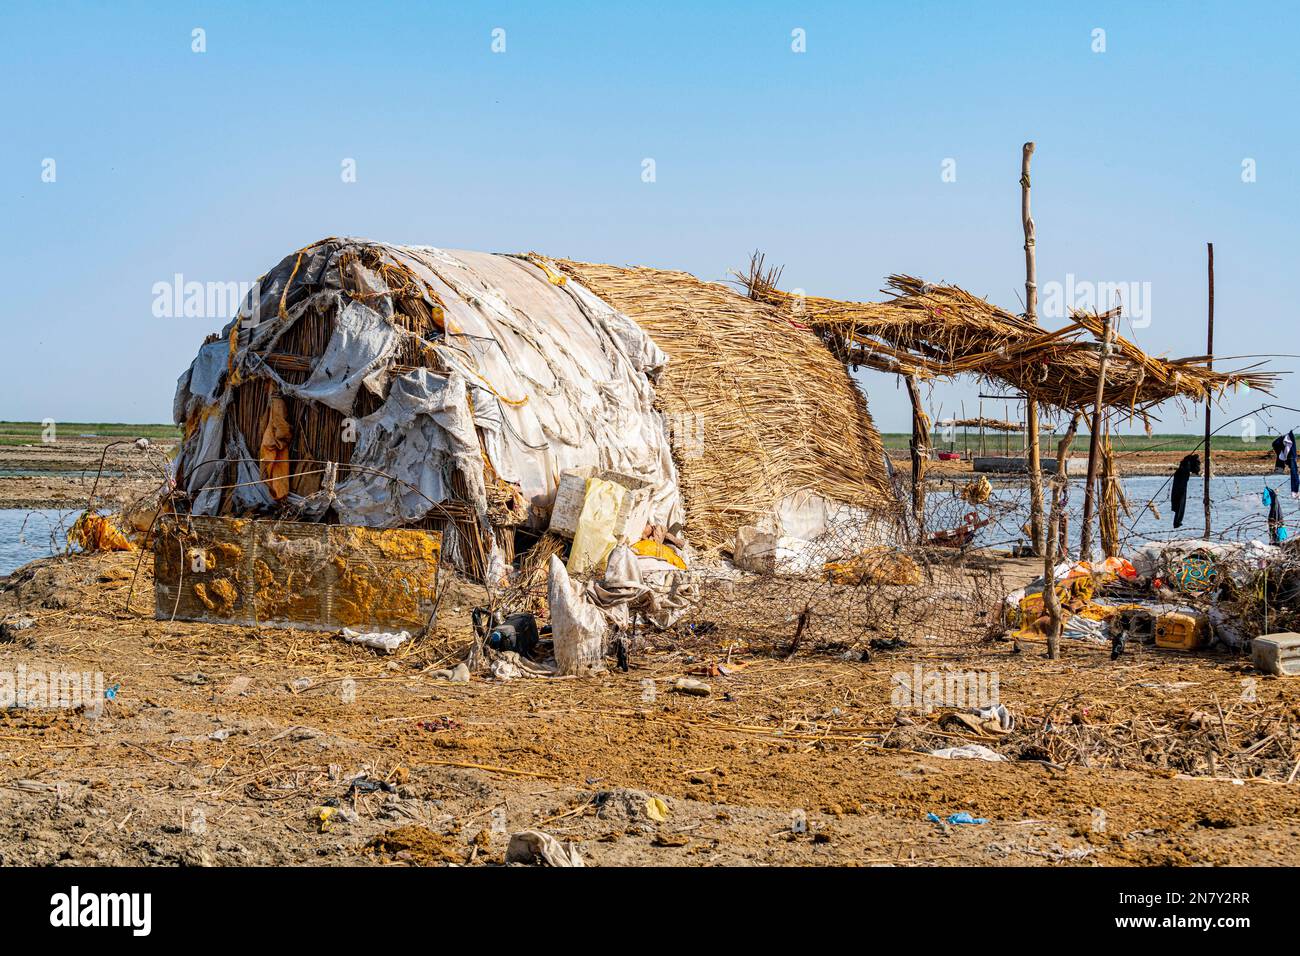 Maison Reed des Arabes des marais, marais mésopotamiens, Ahwar du sud de l'Irak, site de l'UNESCO, Irak Banque D'Images